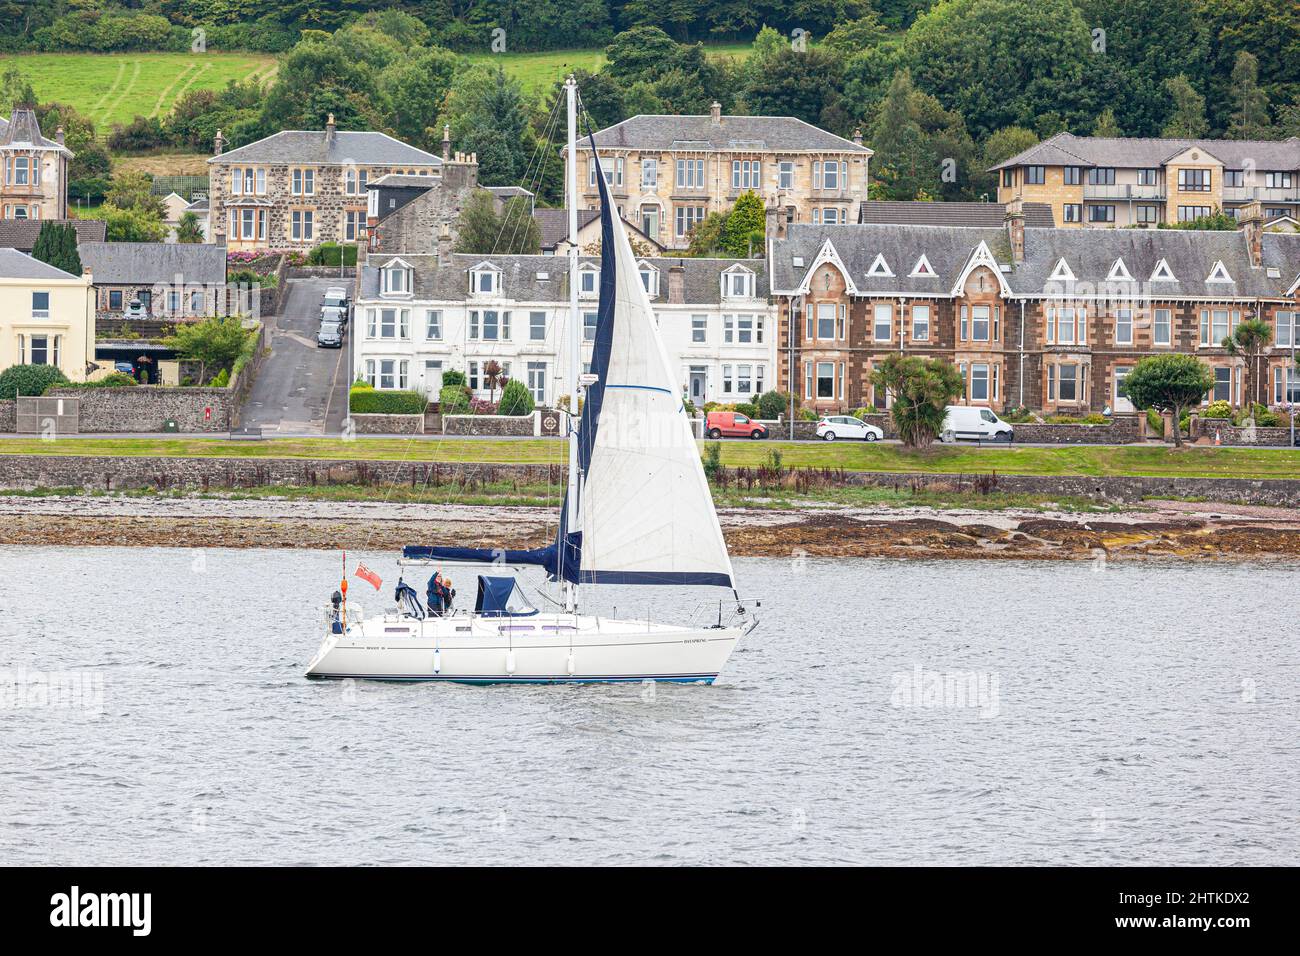 Un yacht passant devant la ville de Rothesay dans la baie de Rothesay sur l'île de Bute, Argyll & Bute, Écosse, Royaume-Uni Banque D'Images